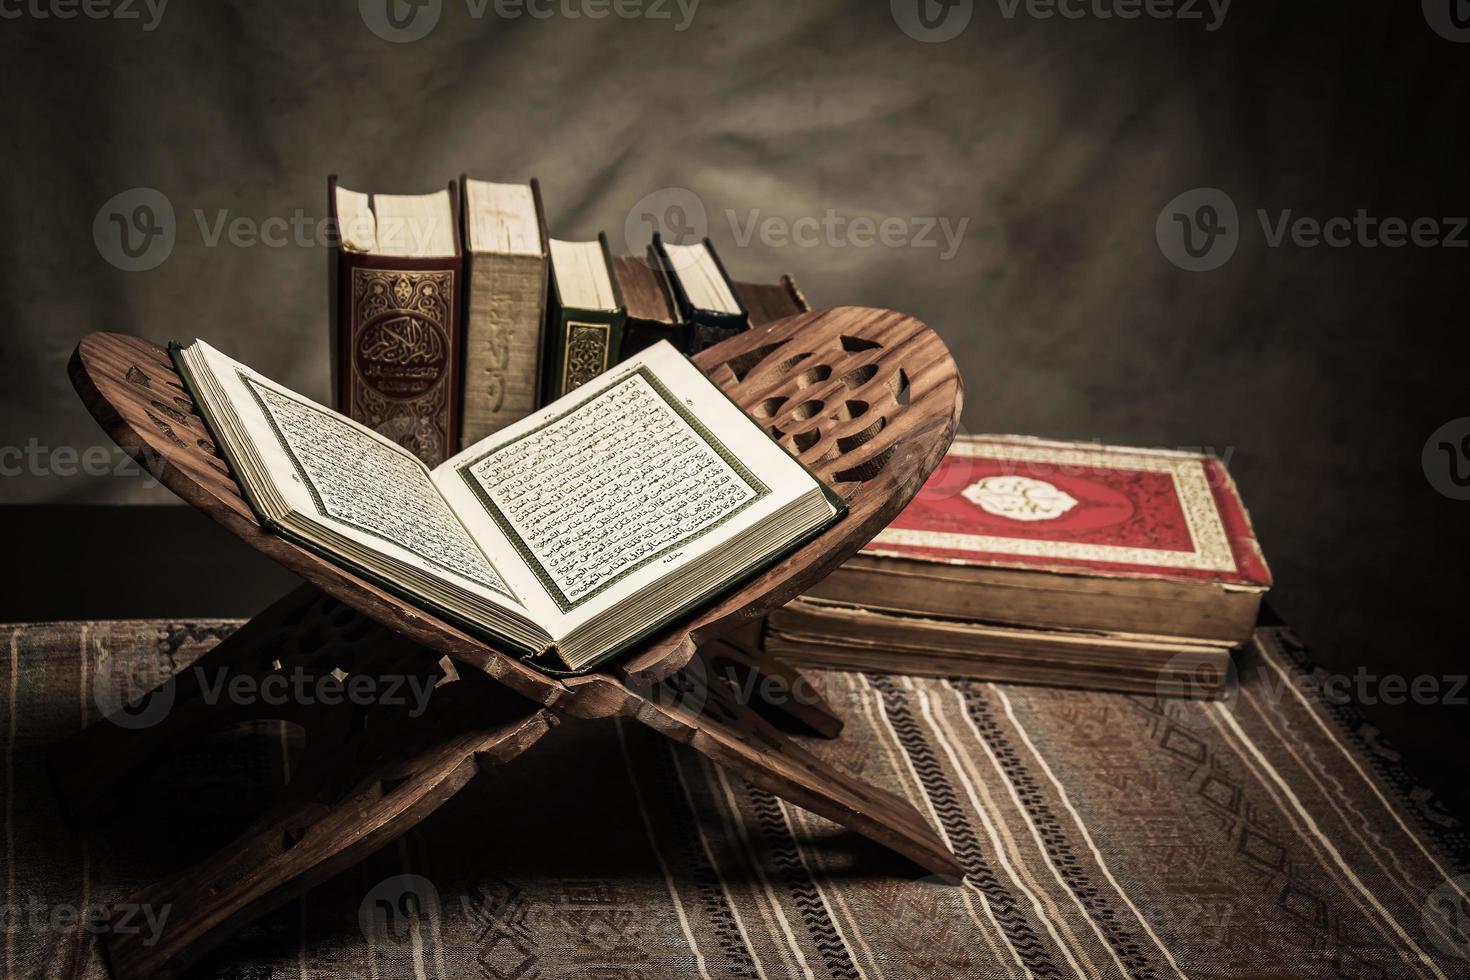 Koran heilig boek van moslims openbaar item van alle moslims op tafel, stilleven foto